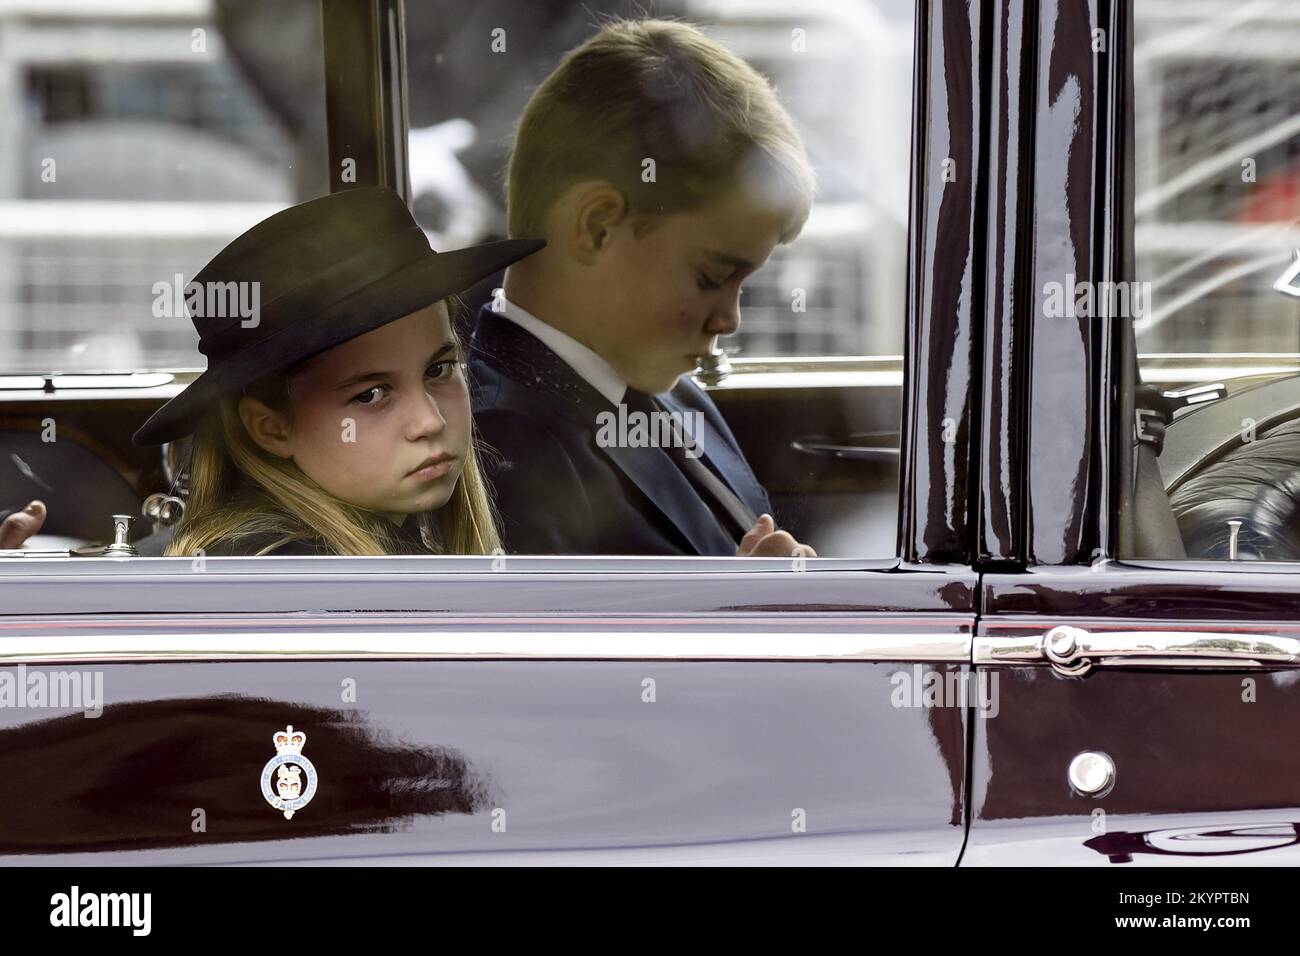 LONDRES, ANGLETERRE : la princesse Charlotte et le prince George vus dans leur voiture sur le Mall après avoir assisté à l'État funéraire pour la reine Elizabeth II à l'abbaye de Westminster. Avec: Princess Charlotte, Prince George où: Londres, Royaume-Uni quand: 19 sept 2022 crédit: Neil Lupin/WENN Banque D'Images